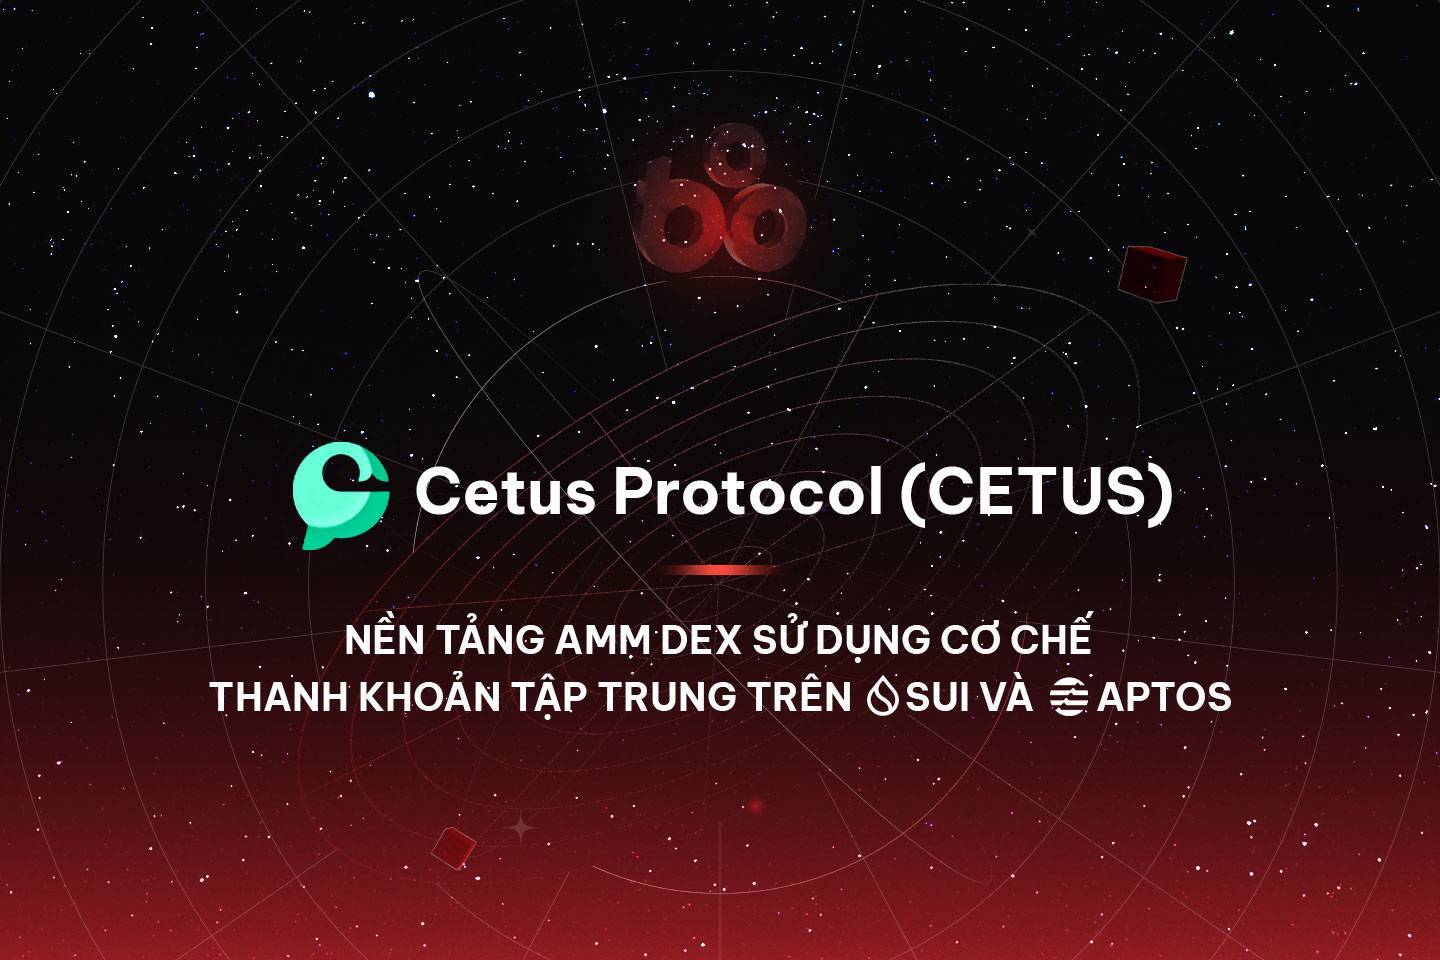 Cetus Protocol cetus - Nền Tảng Amm Dex Sử Dụng Cơ Chế Thanh Khoản Tập Trung Trên Sui Và Aptos